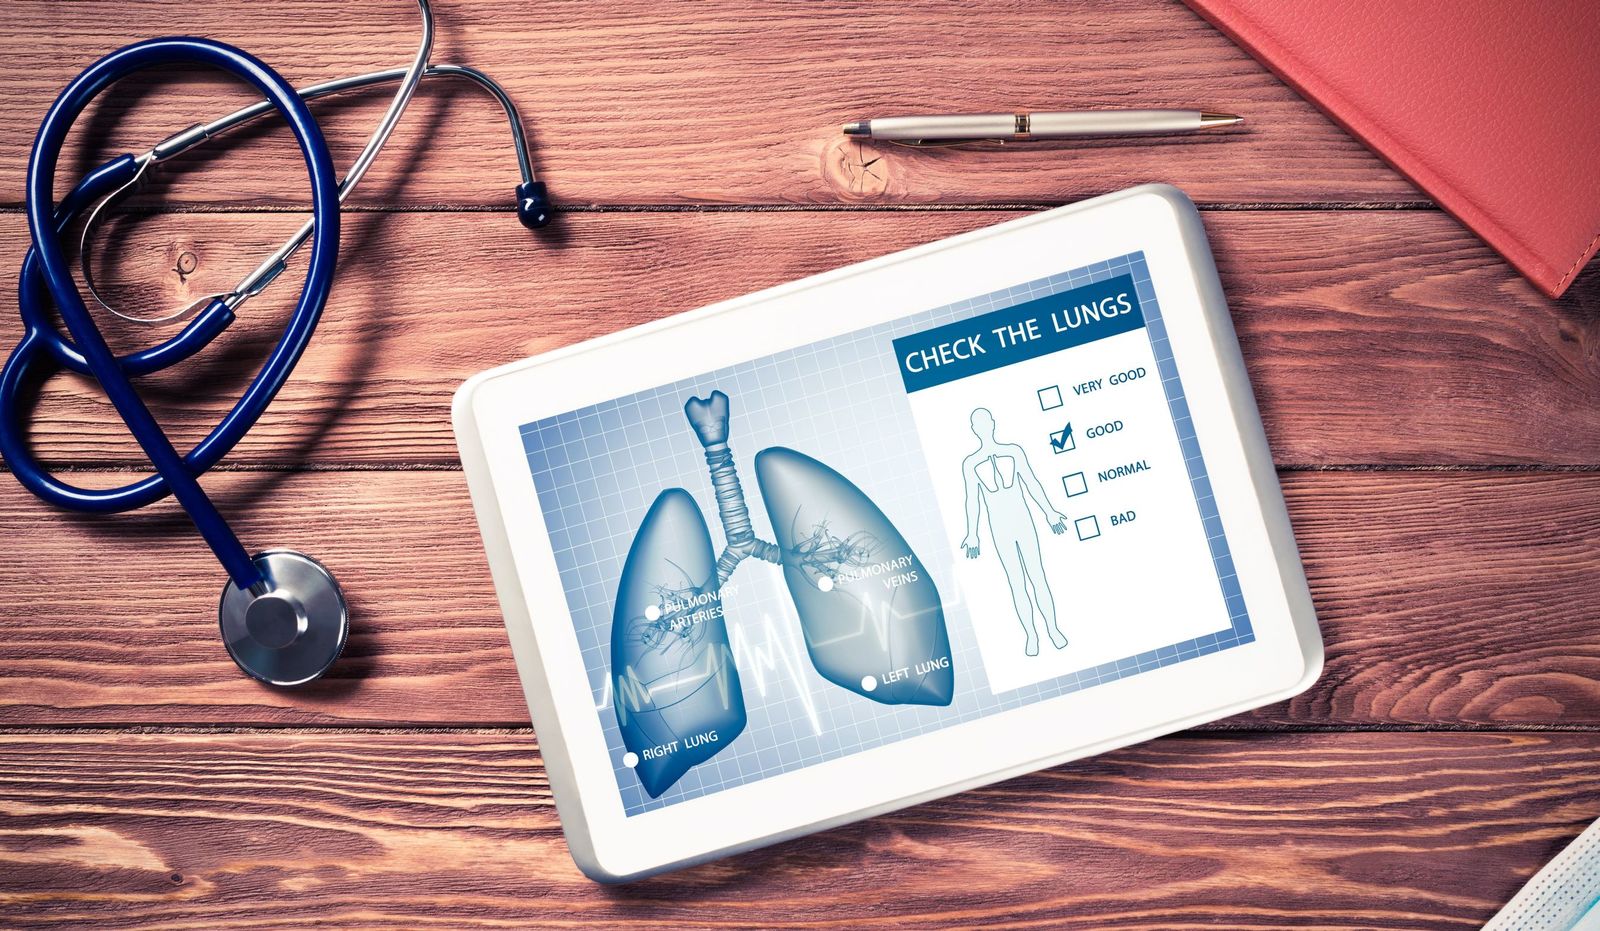 For at spore en eventuel lungebetændelse tidligere udvikles en app.